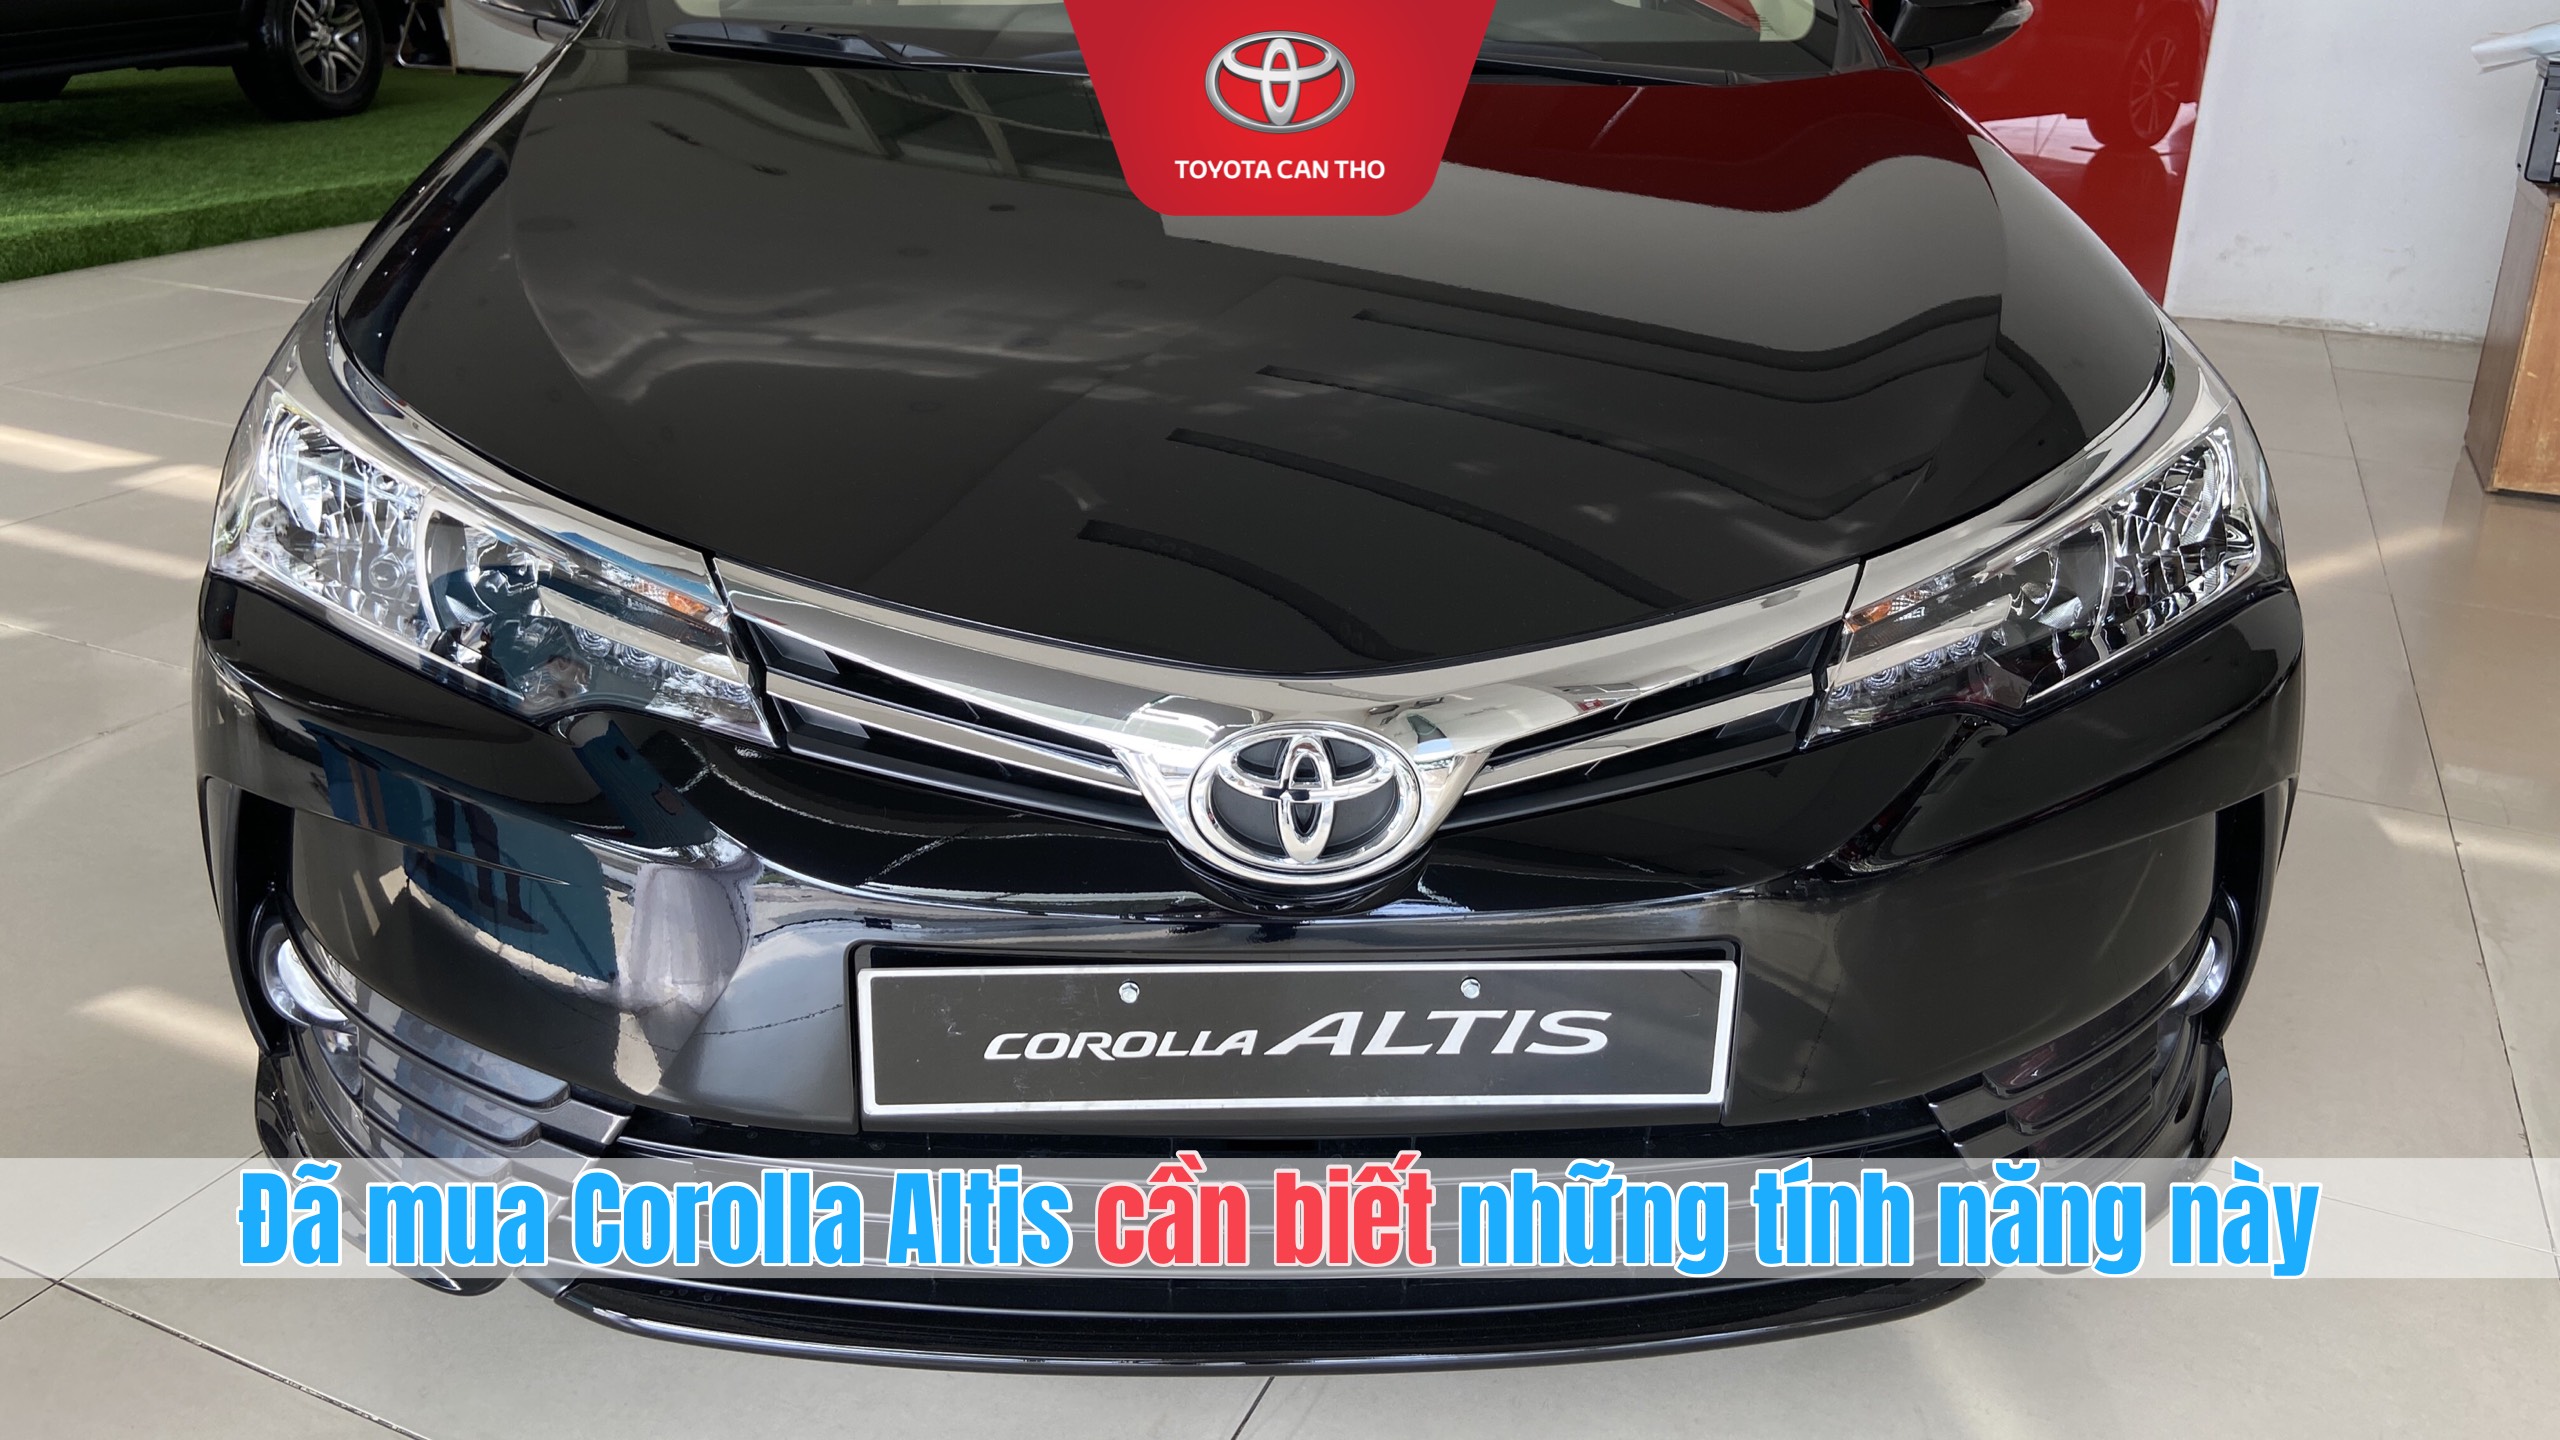 Toyota Corolla Altis 2020 những tính năng cần thiết trên xe